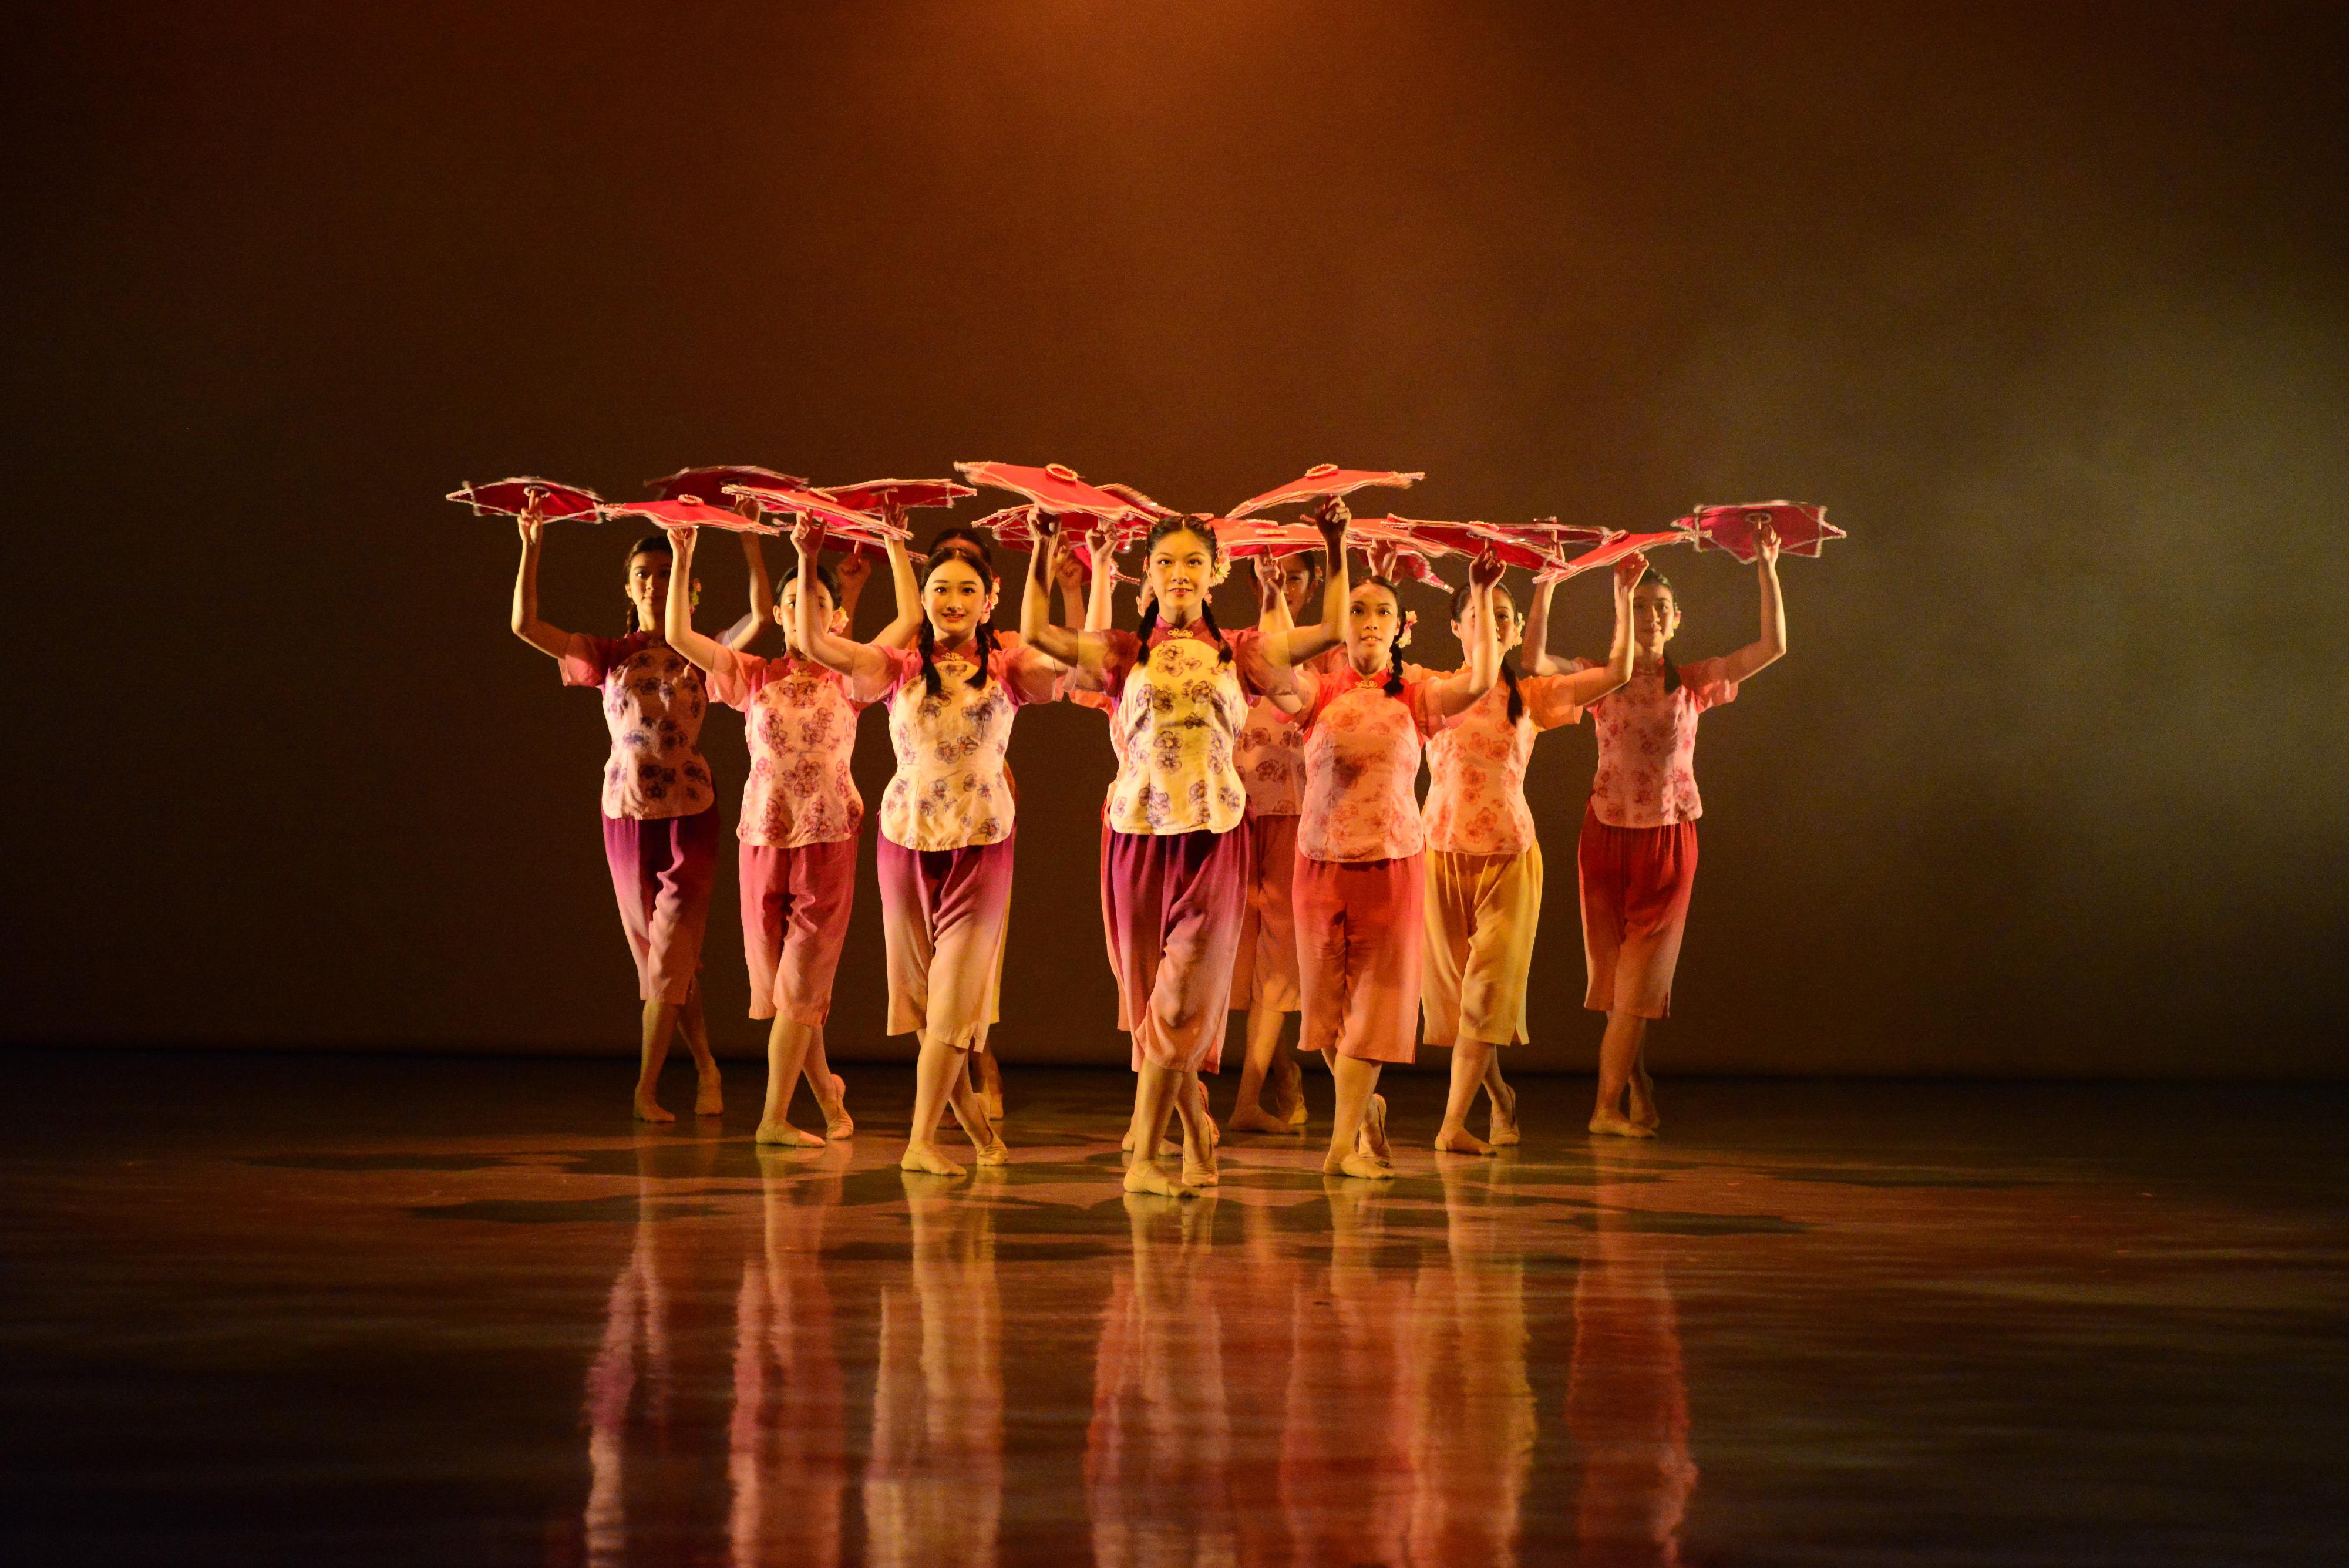 康乐及文化事务署十月至十二月在辖下五个新界表演场地举办「演艺嘉年华2023」，最后一场嘉年华将于十二月十日（星期日）下午在葵青剧院举行，欢迎市民参与。香港演艺学院学生将在葵青剧院带来中国舞、芭蕾舞和现代舞表演。